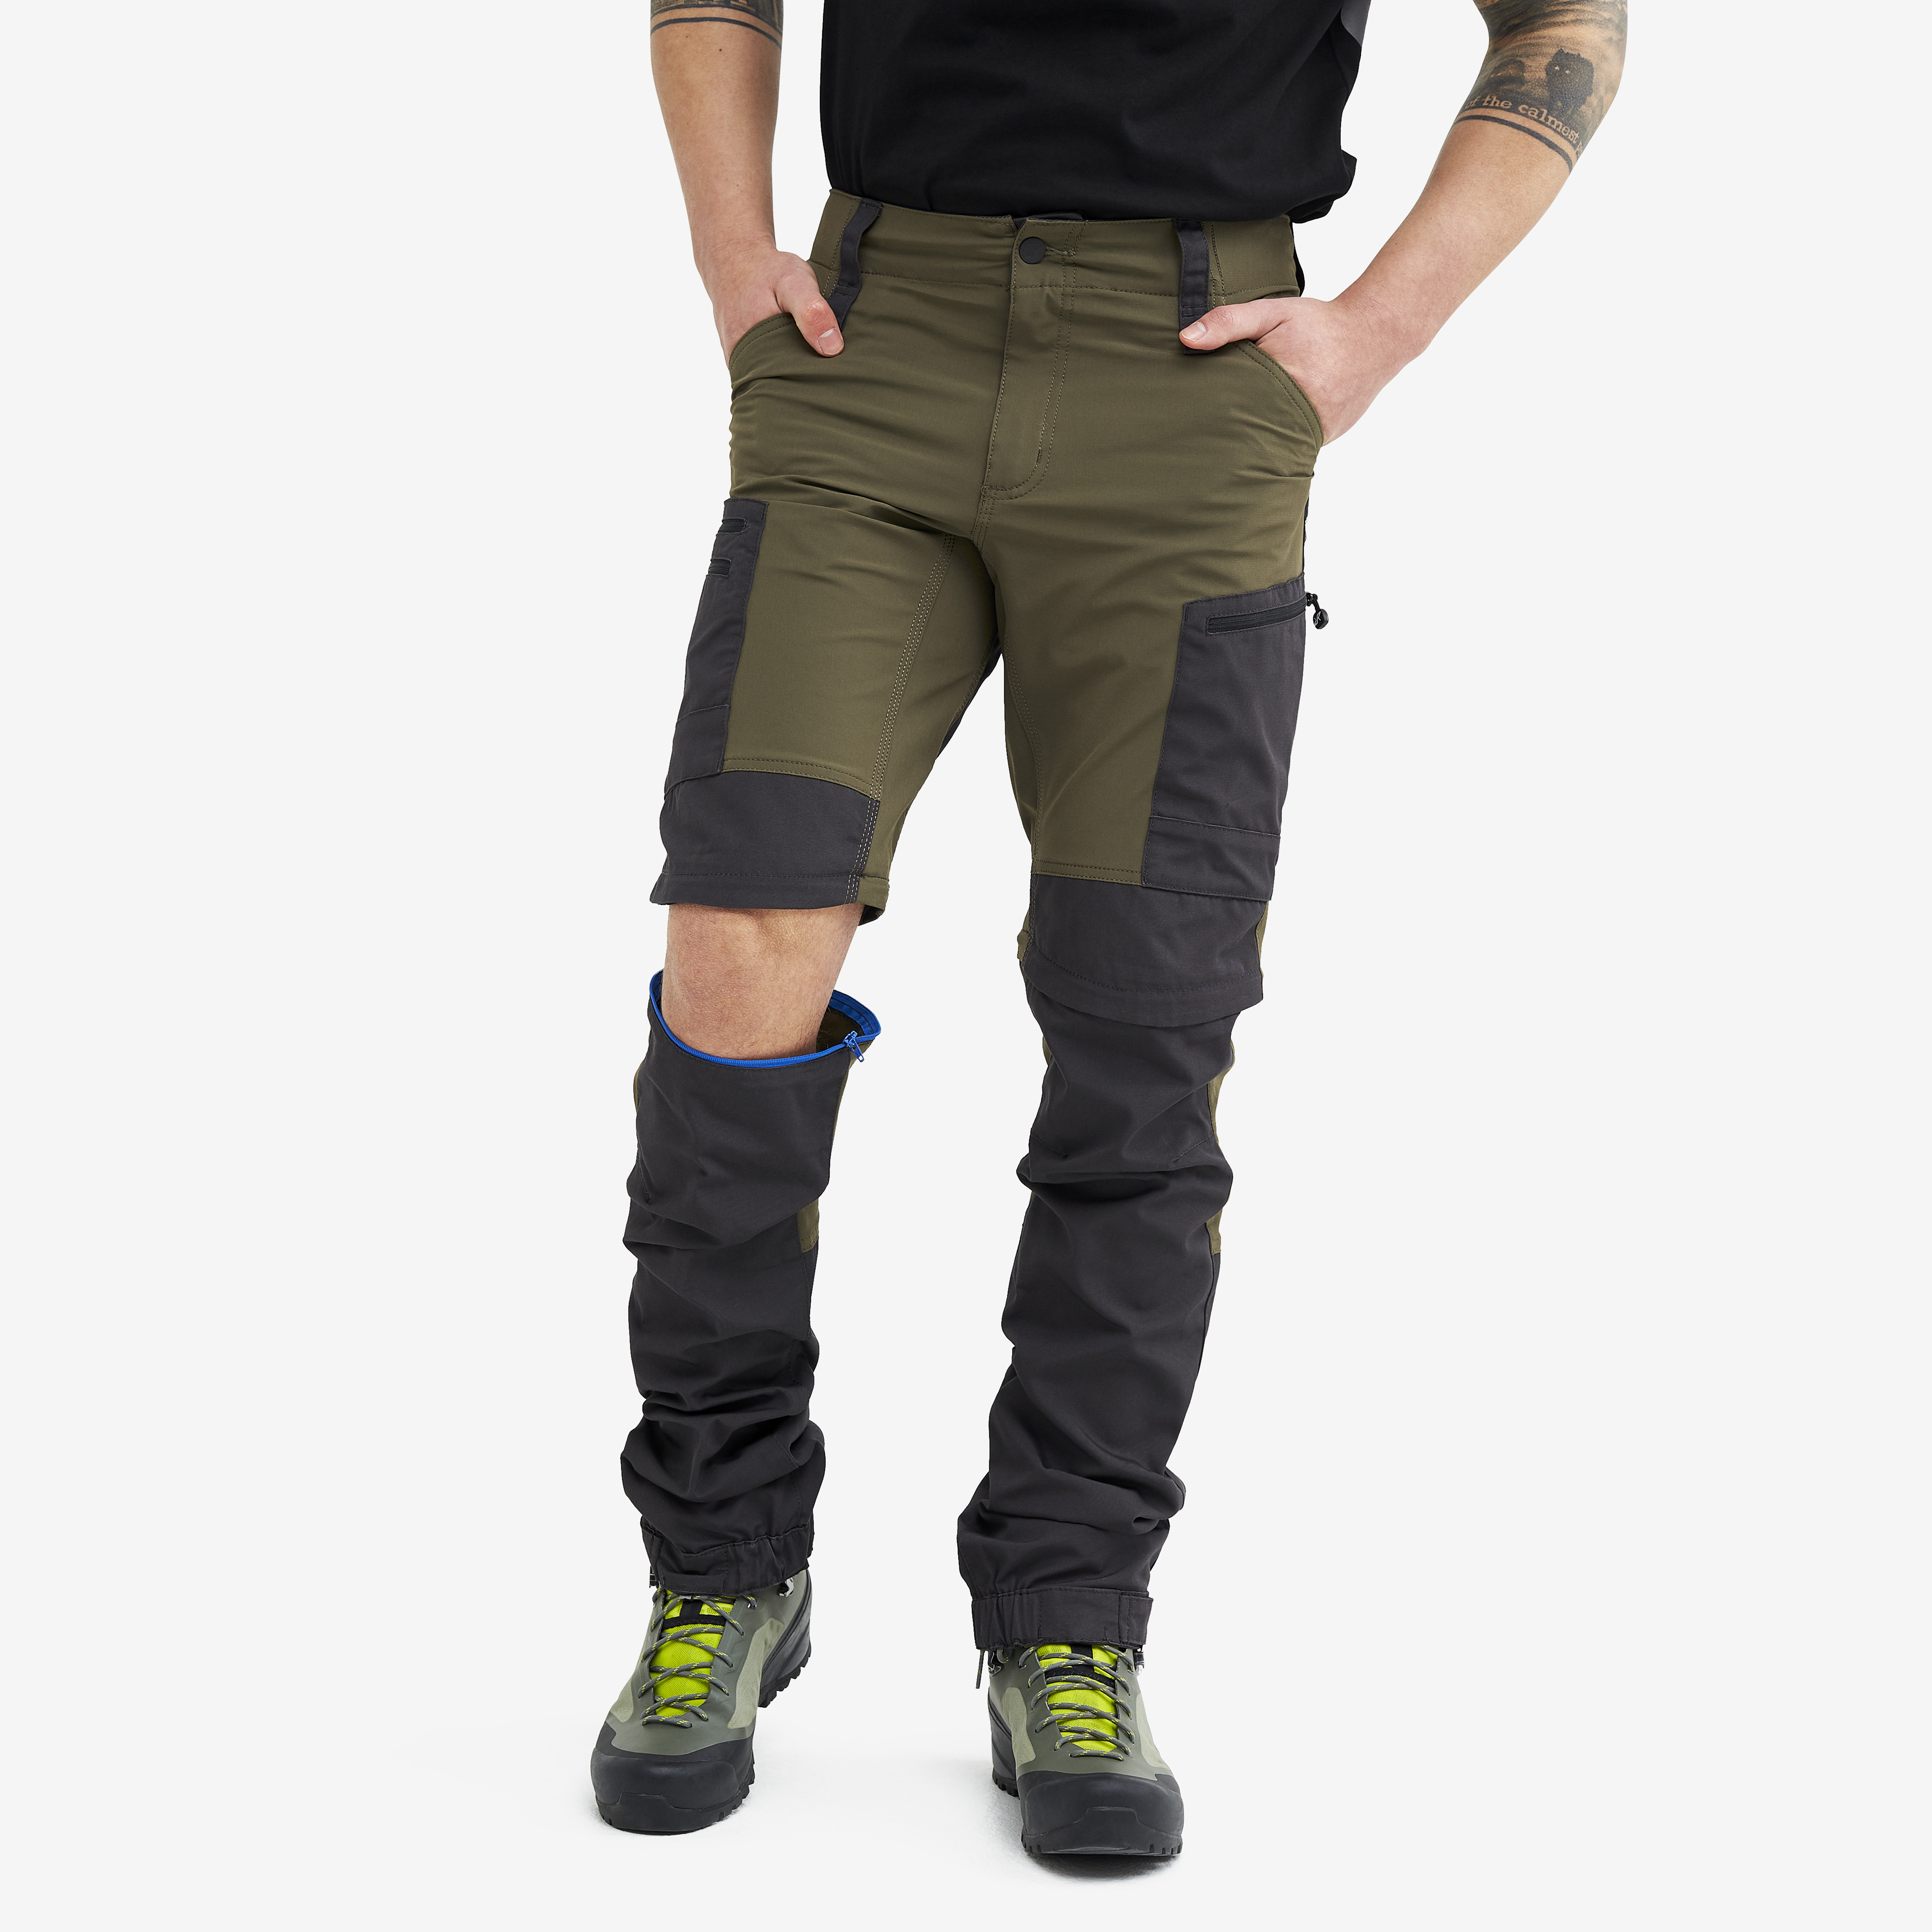 RVRC GP Pro Zip-off hiking pants for men in green